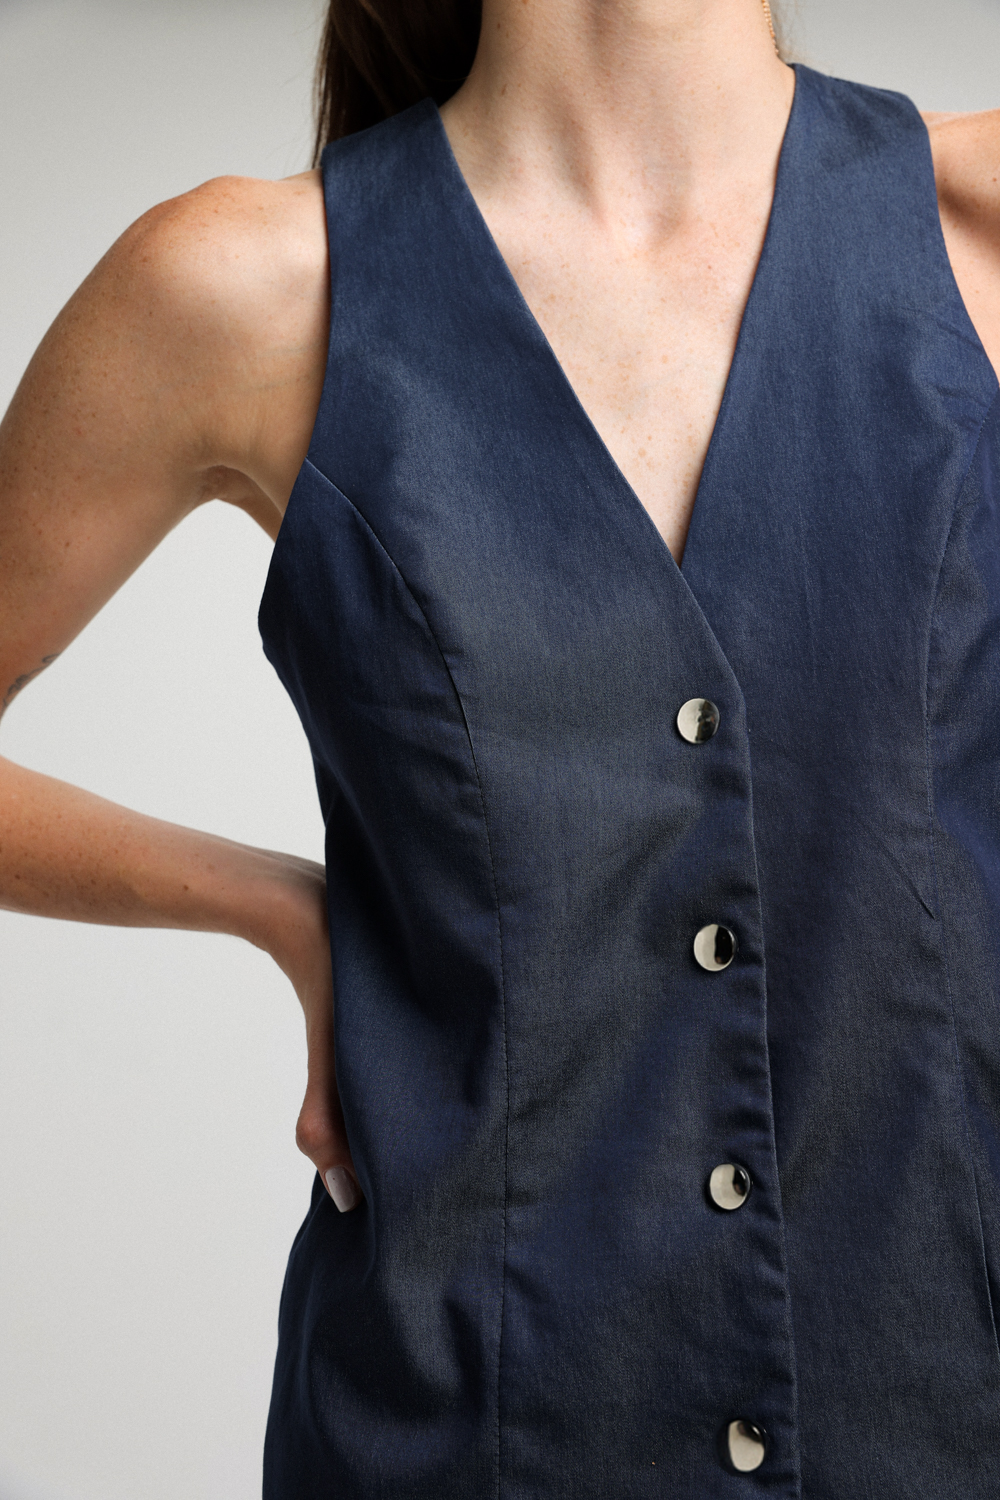 וסט כחול לנשים דגם Inspo Blue Vest עם כפתורים וצווארון וי